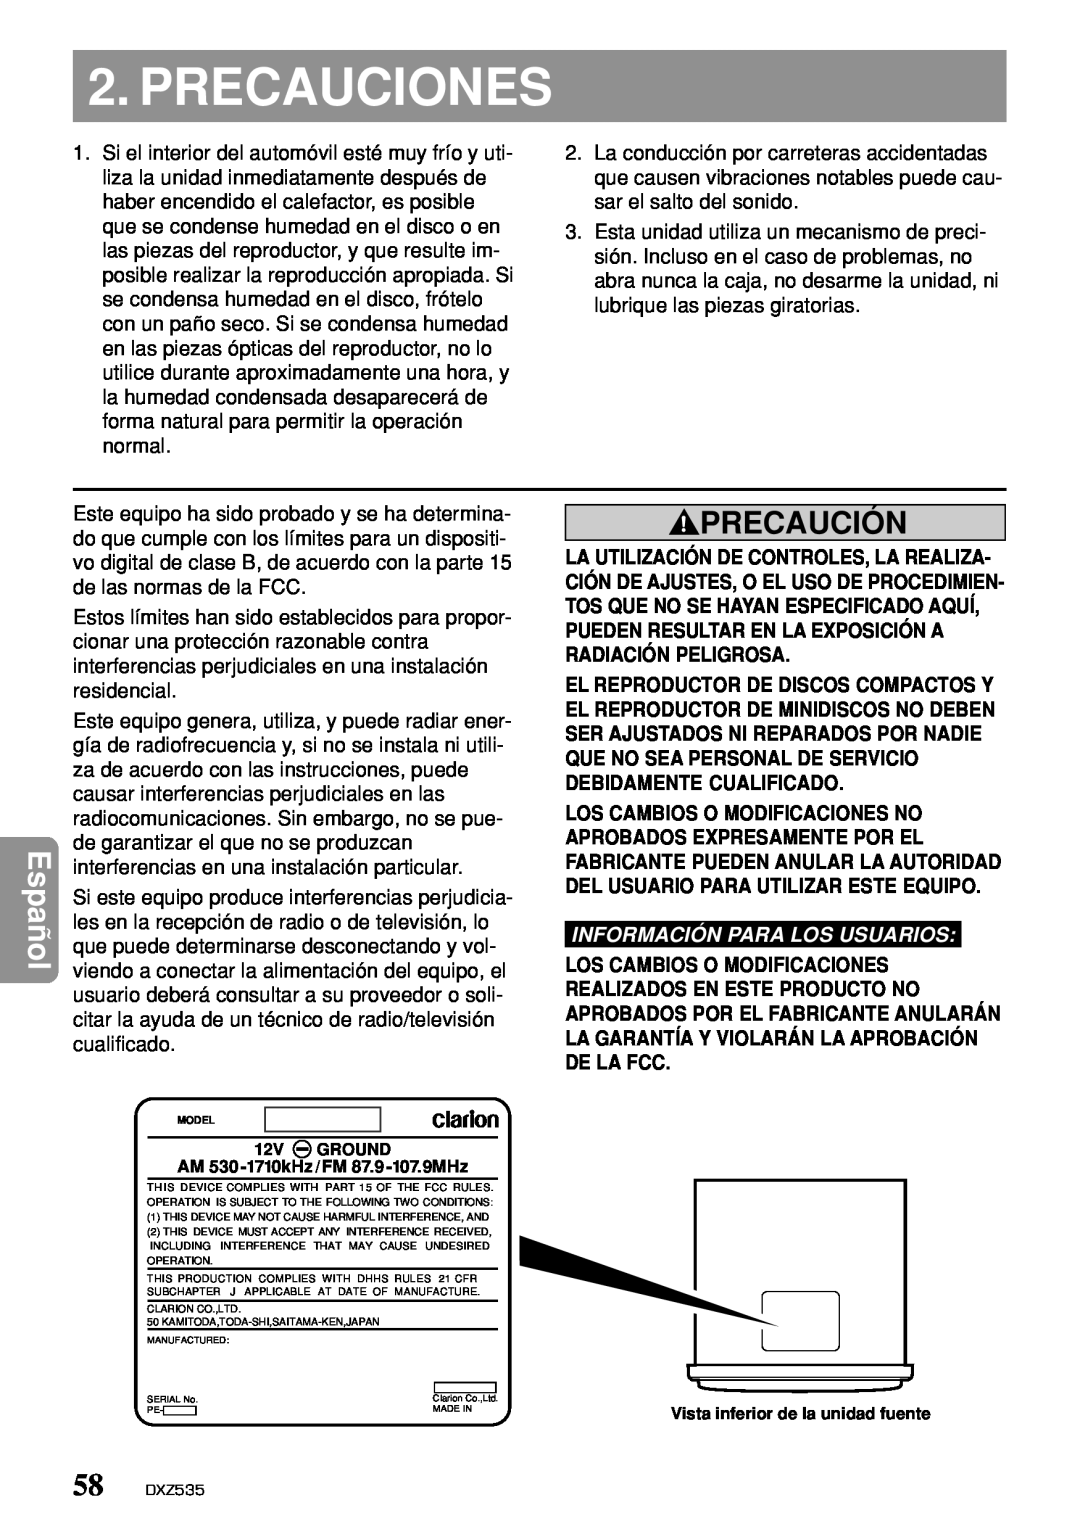 Clarion DXZ535 owner manual Precauciones, Precaución, Información Para Los Usuarios 